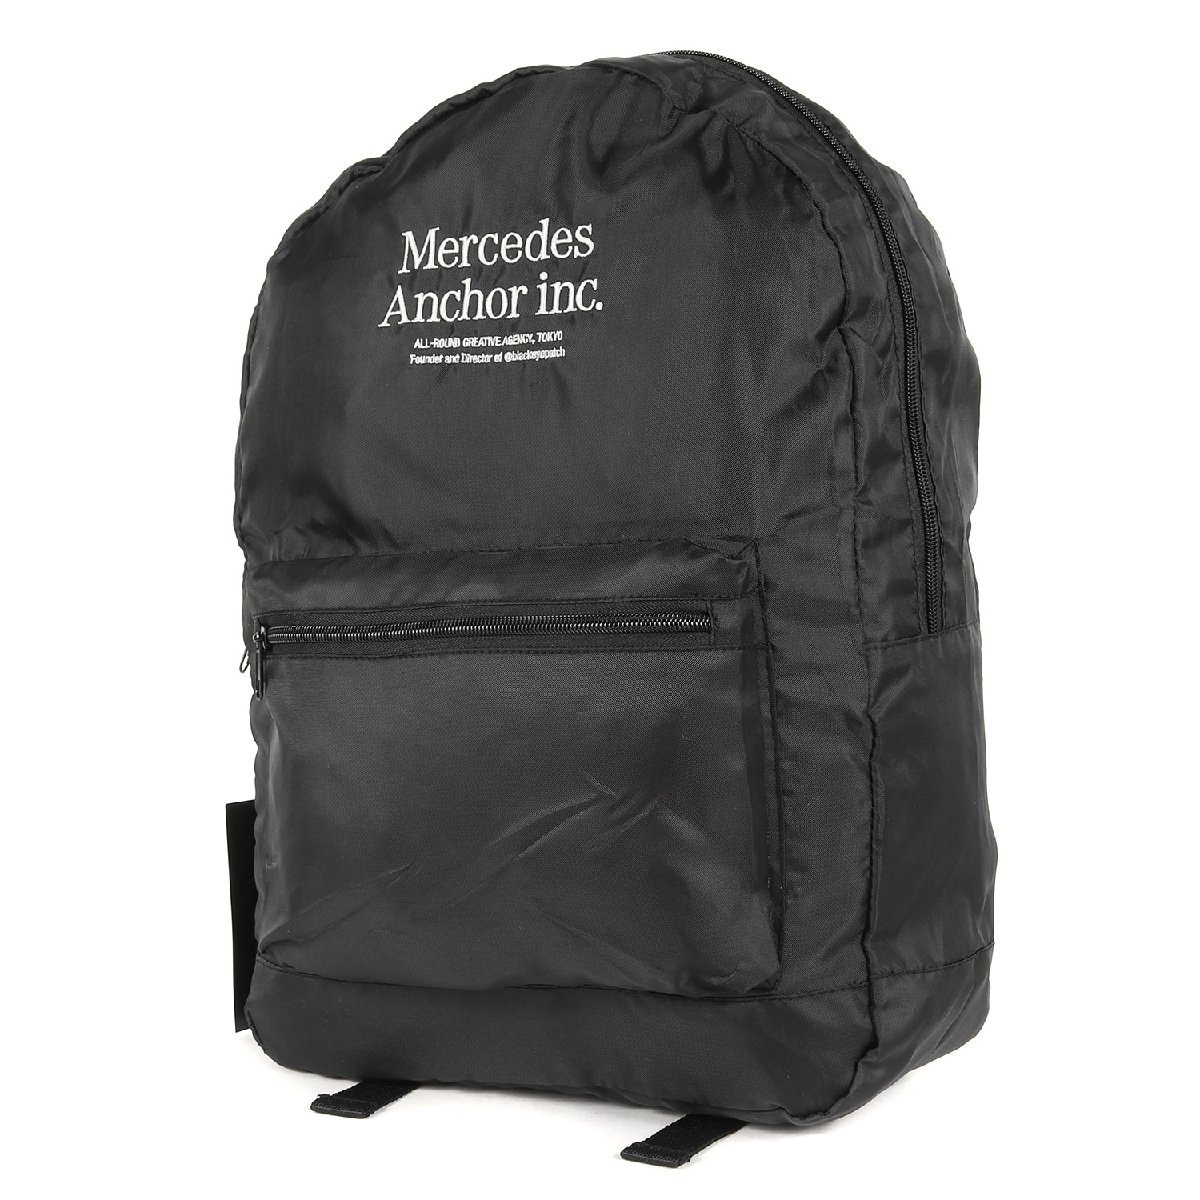 新品 MERCEDES ANCHOR INC メルセデスアンカーインク バッグ 23SS ブランドロゴ バックパック ブラック 黒 カバン メンズバッグ